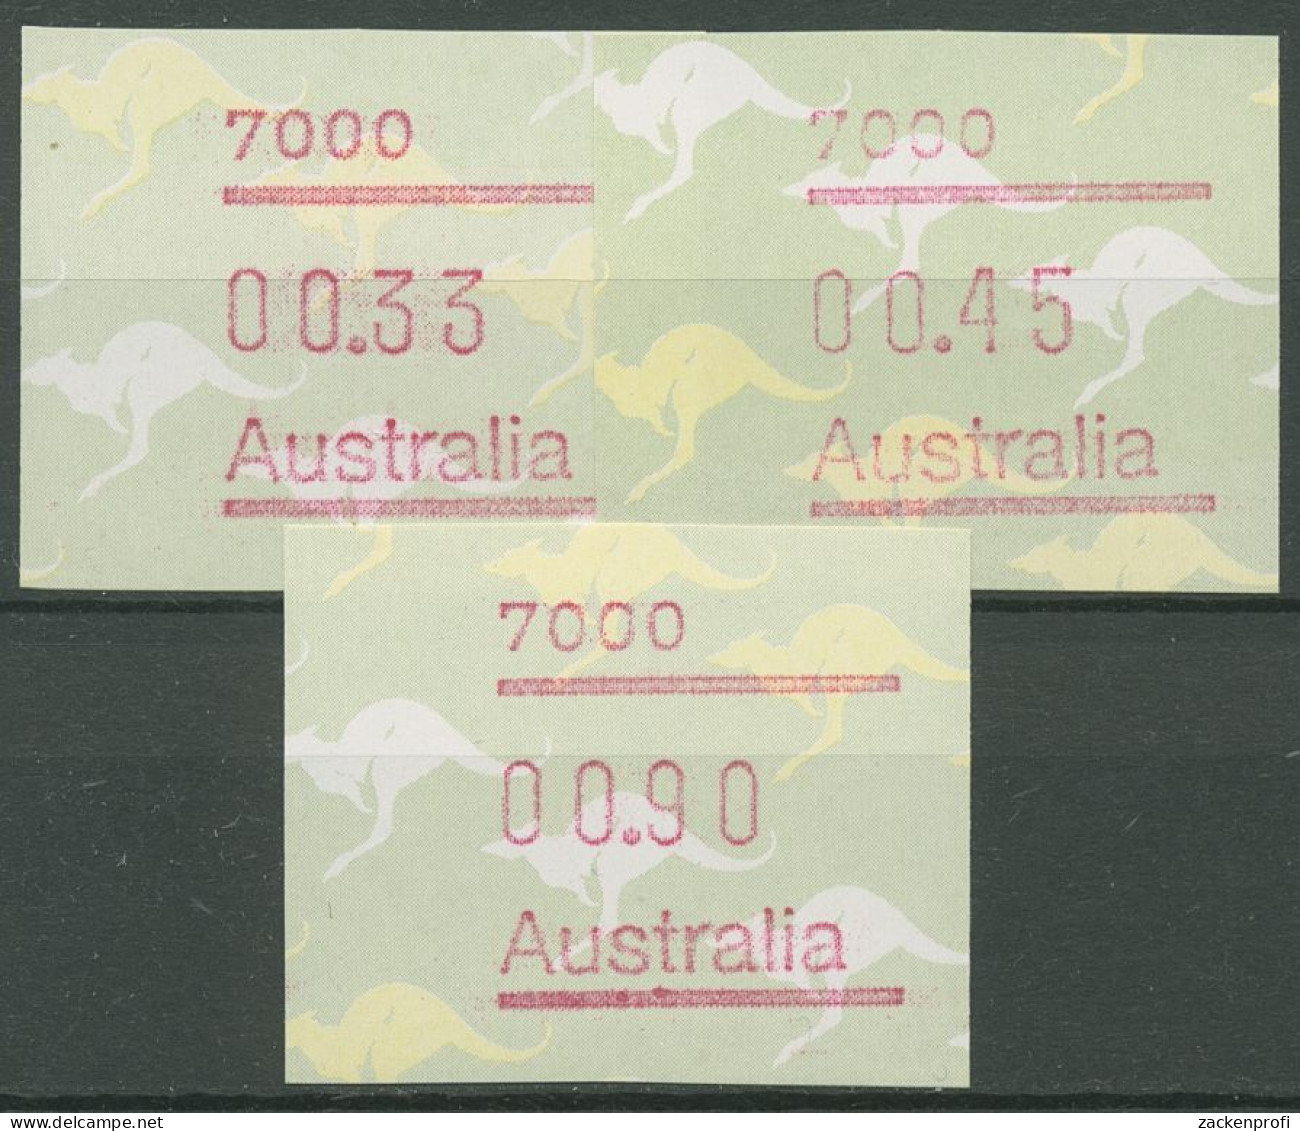 Australien 1985 Känguruh Tastensatz Automatenmarke 4 S1, 7000 Postfrisch - Automatenmarken [ATM]